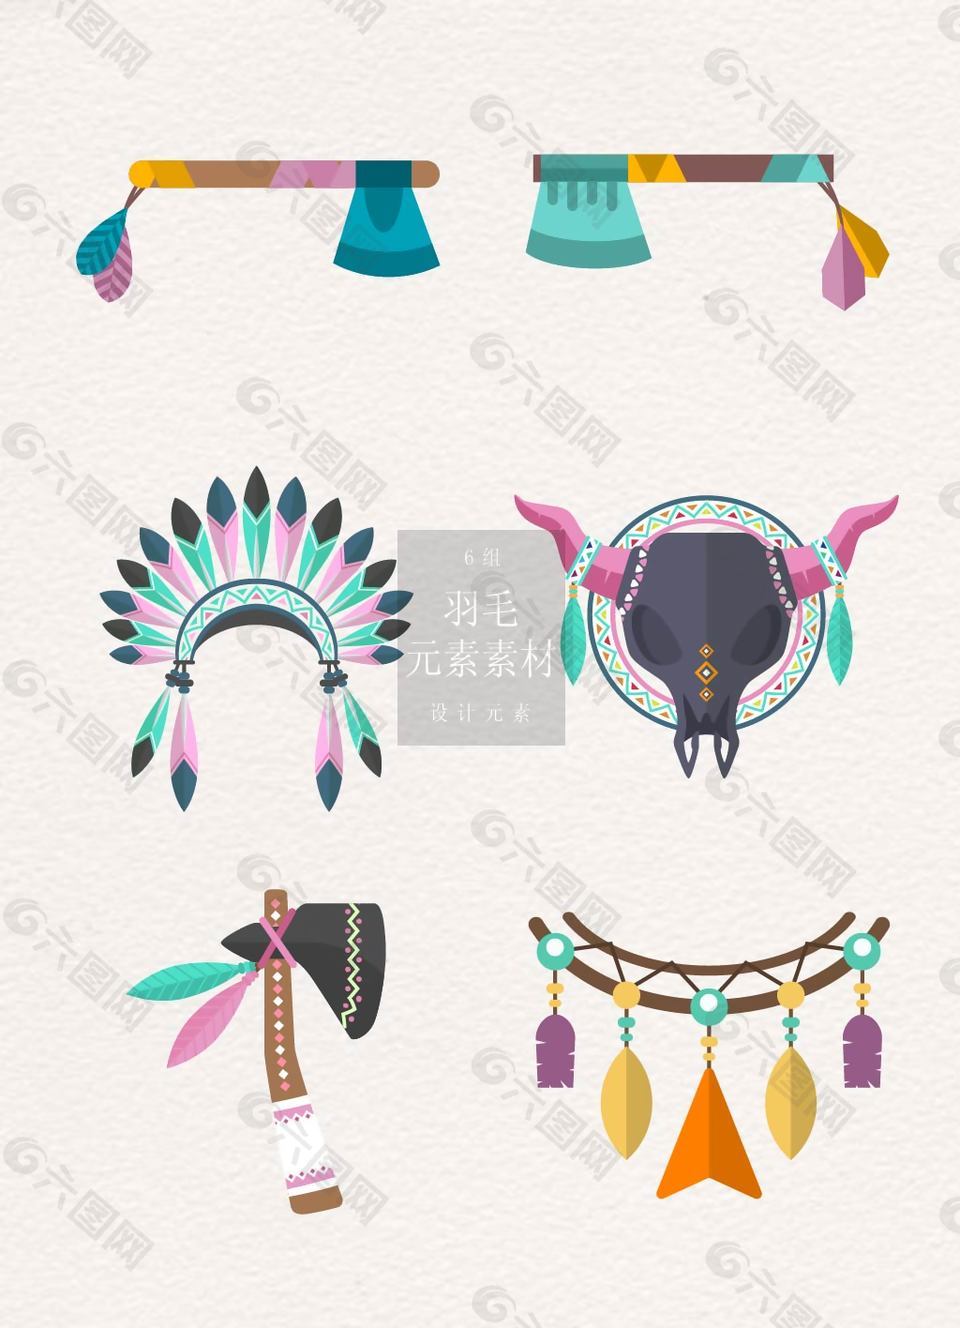 多彩少数民族风羽毛装饰品素材